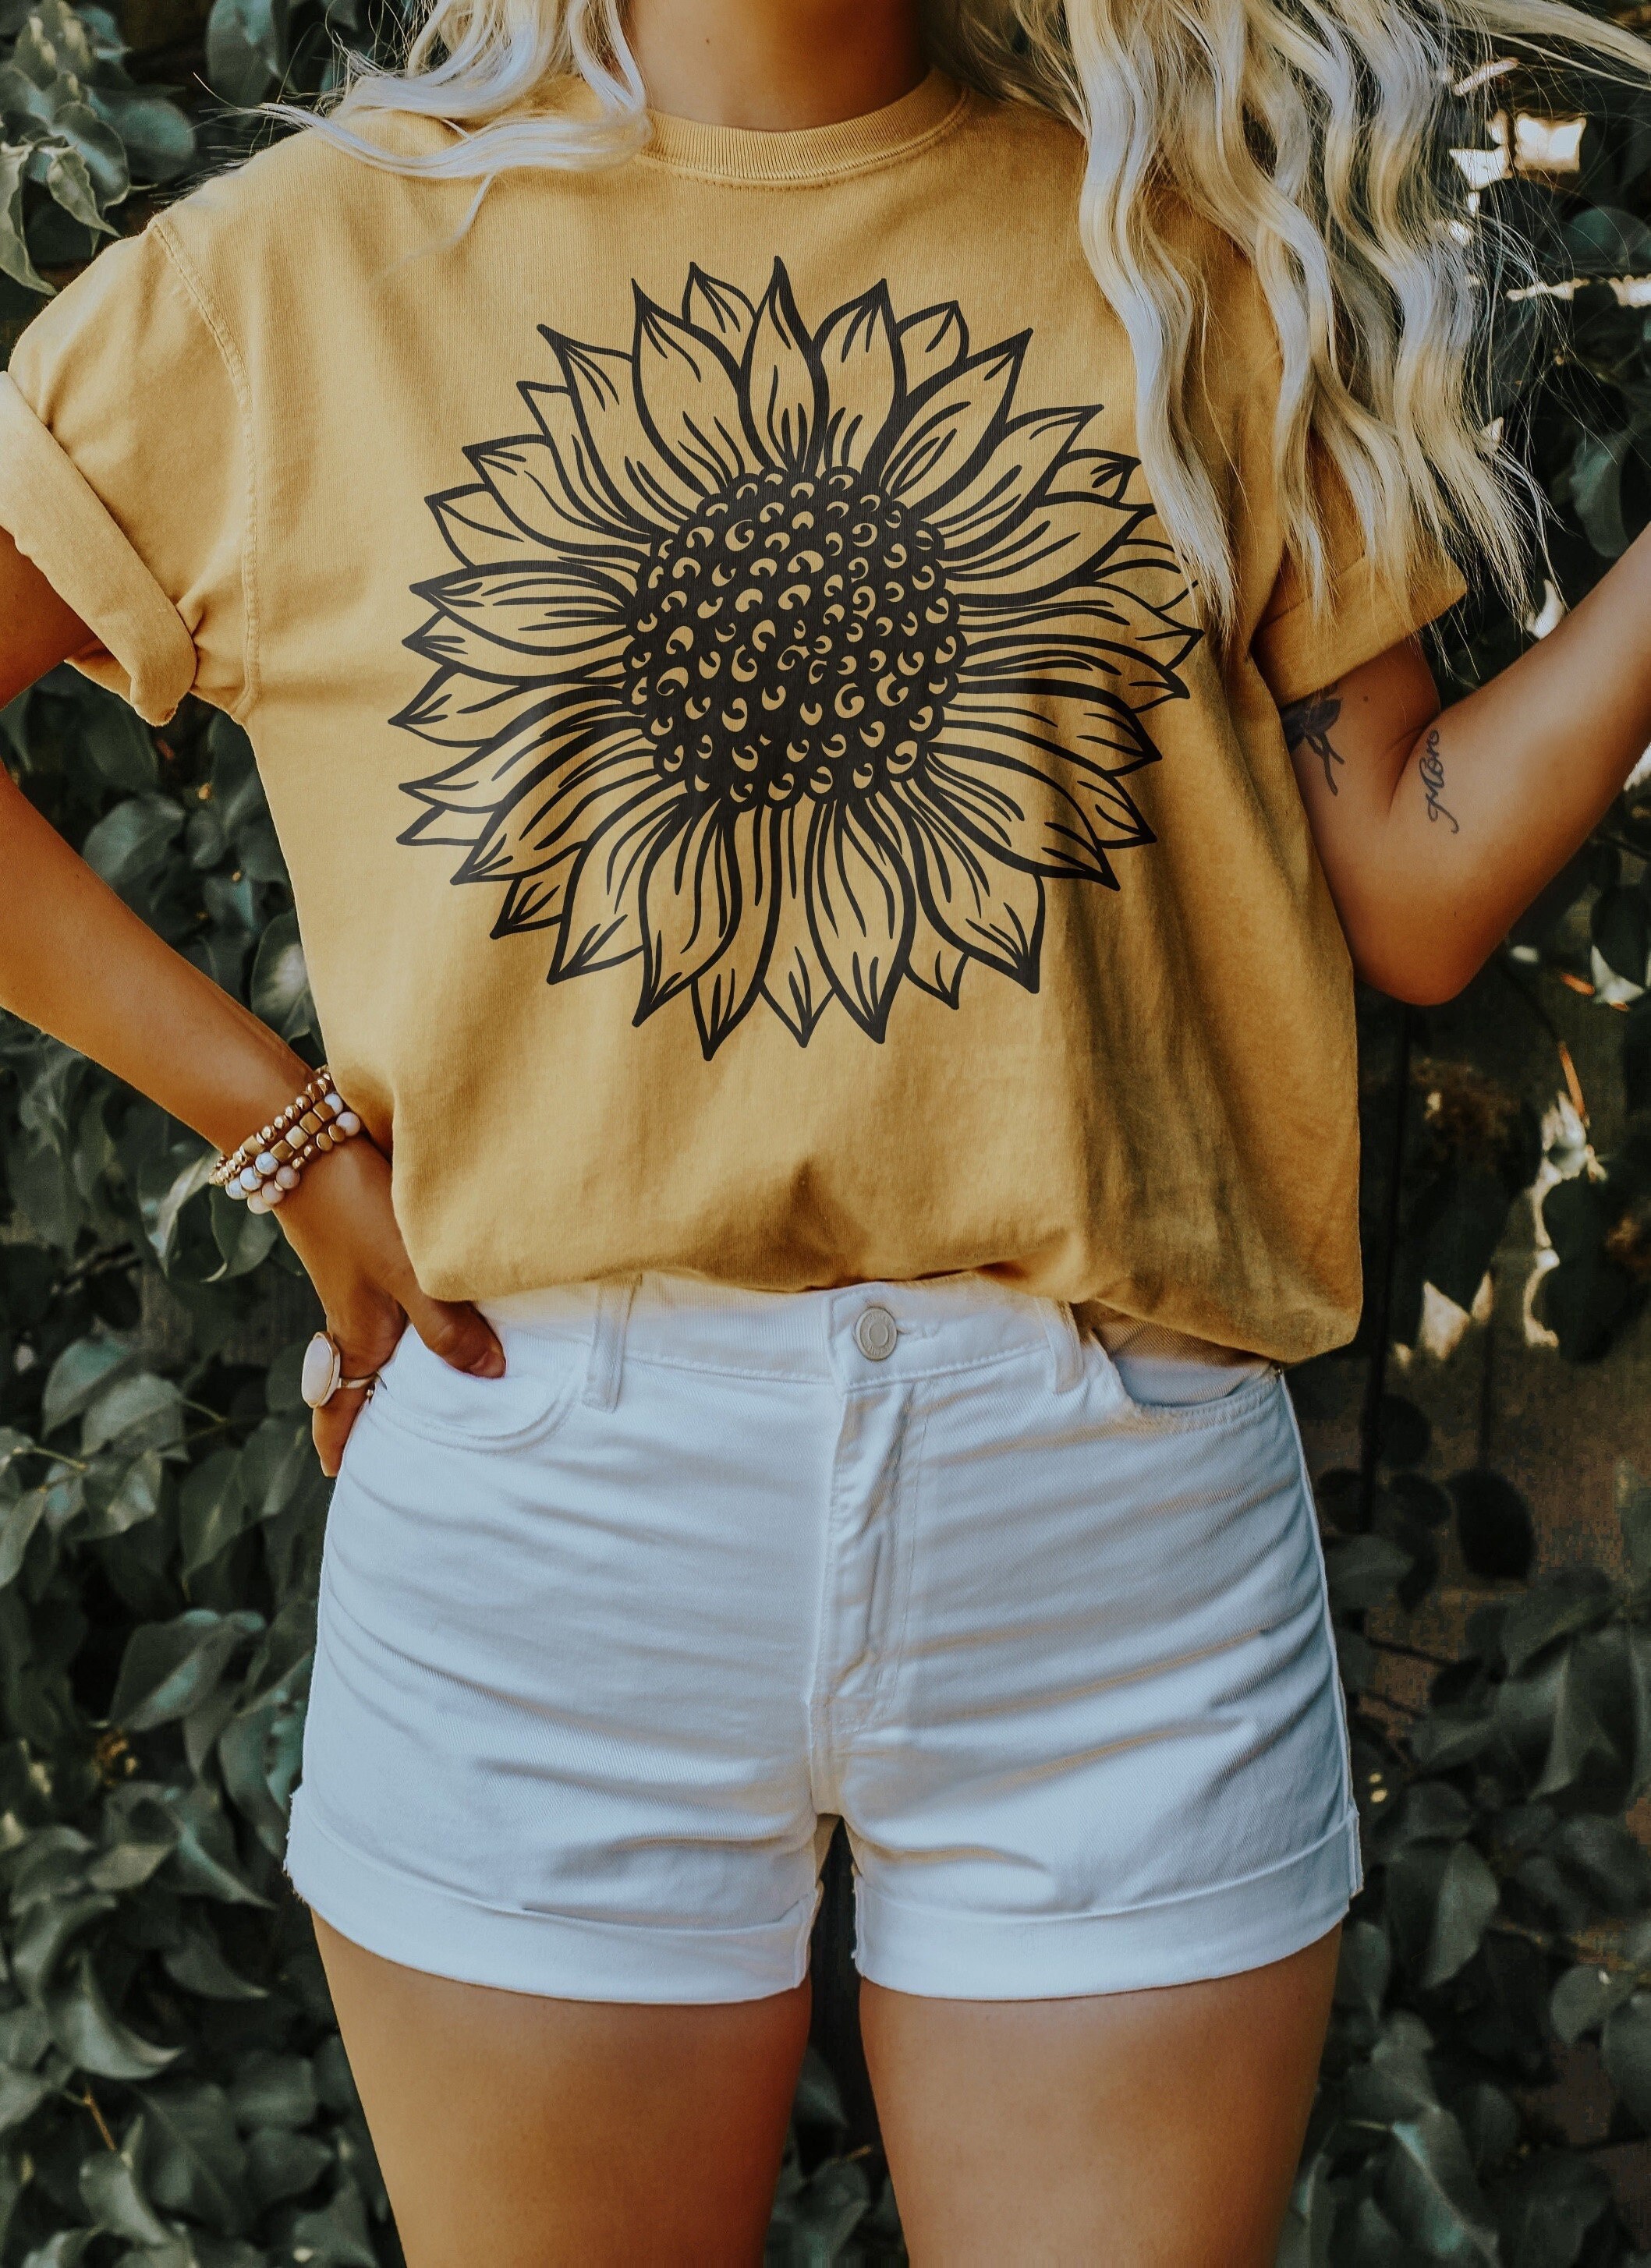 husmor Mechanics højttaler Sunflower Shirt Wildflower Shirts Cute Summer Shirt - Etsy